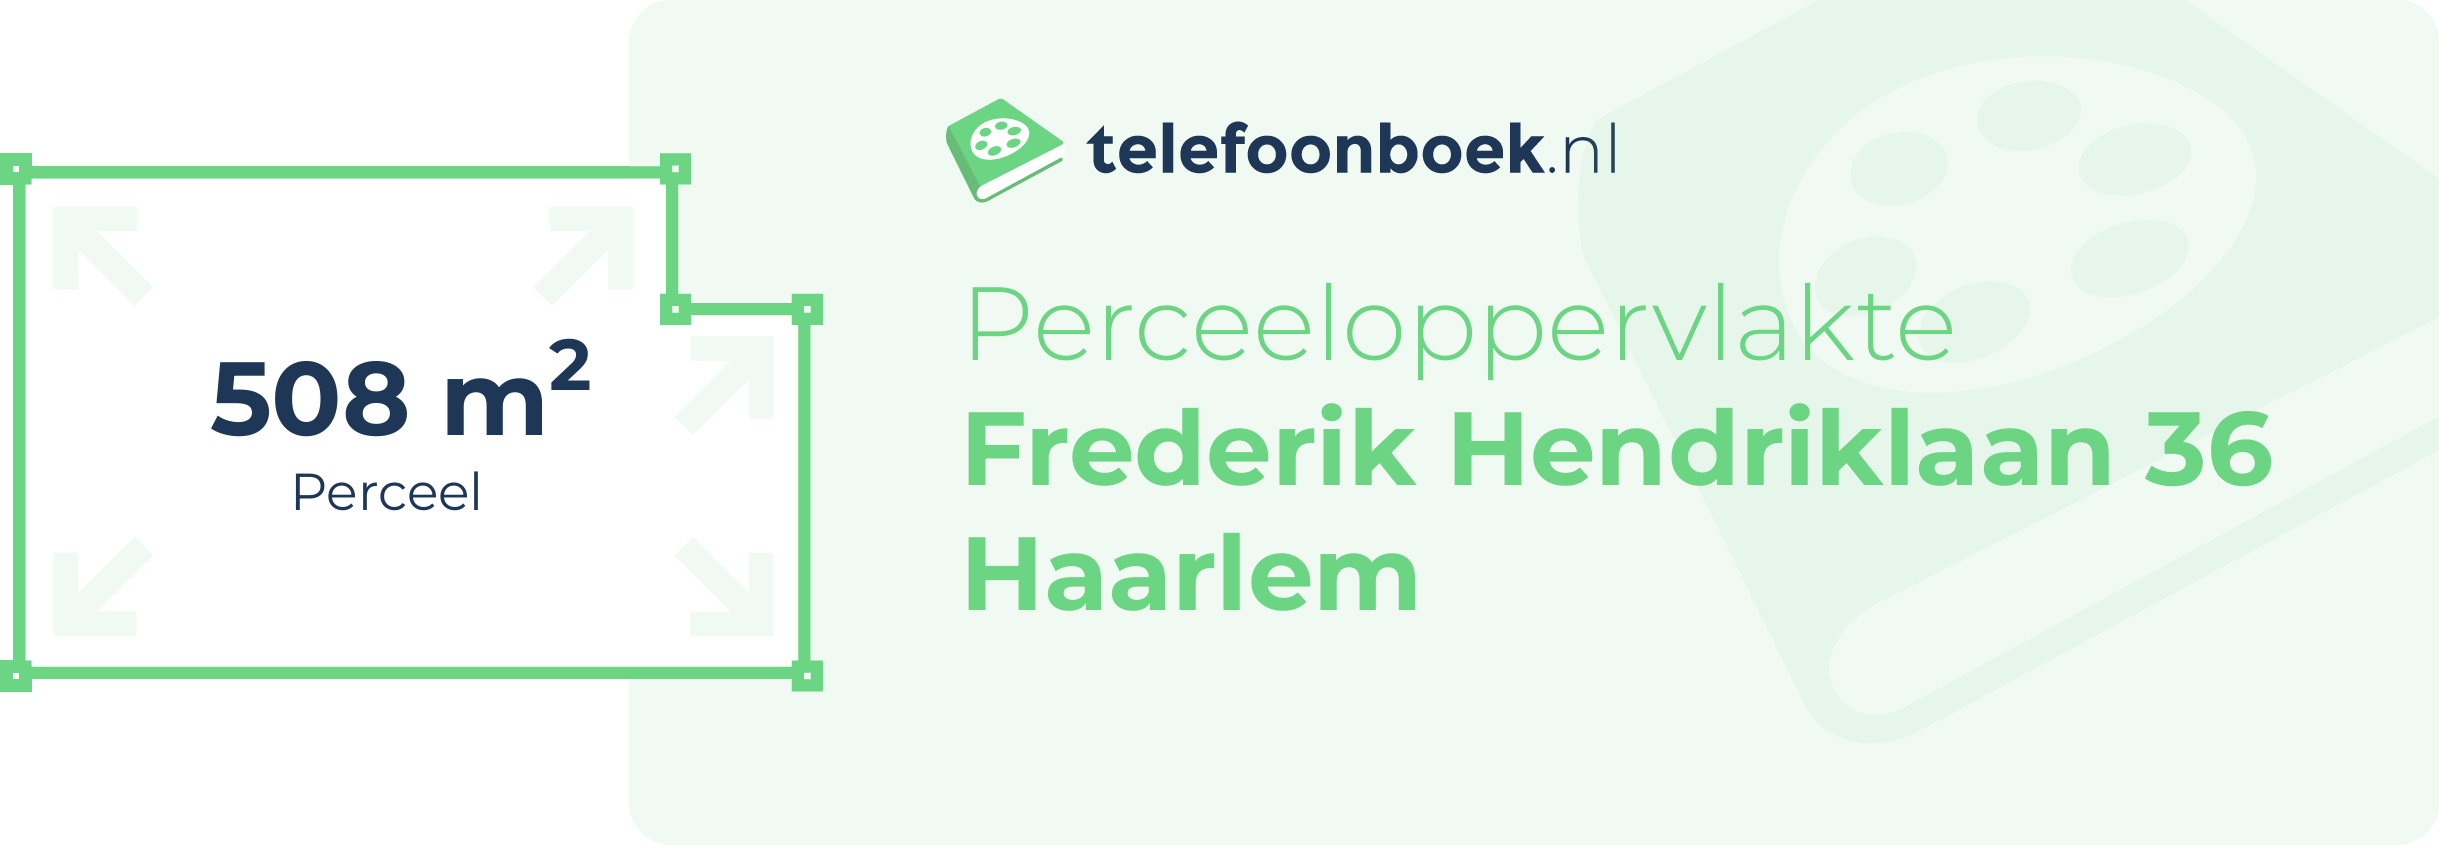 Perceeloppervlakte Frederik Hendriklaan 36 Haarlem